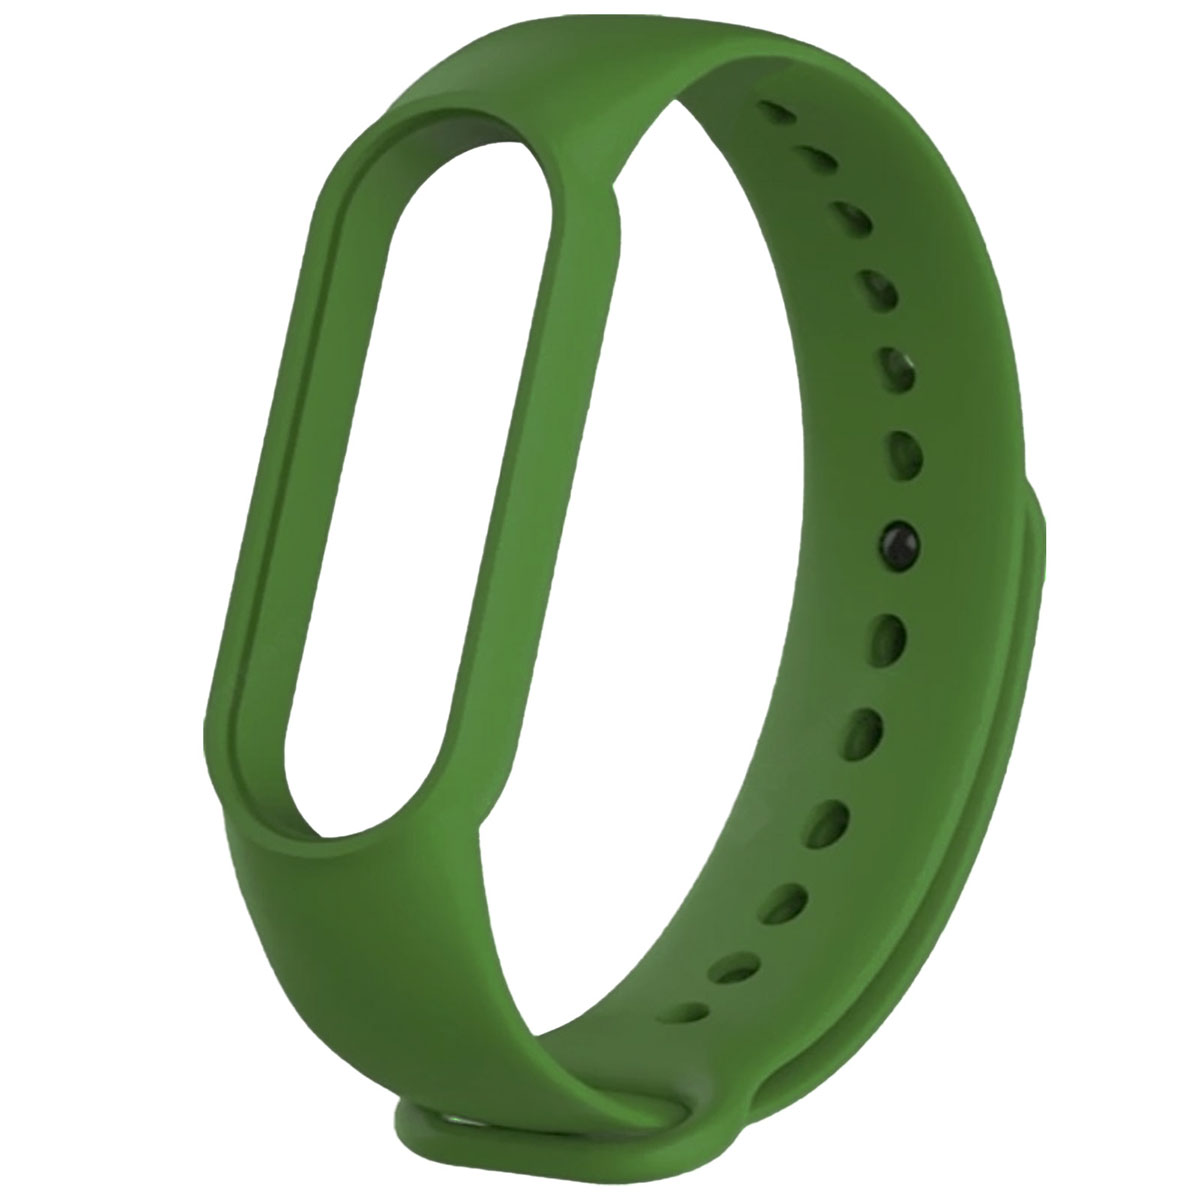 Сменный ремешок для фитнес браслета, смарт часов XIAOMI Mi Band 5, цвет темно зеленый.